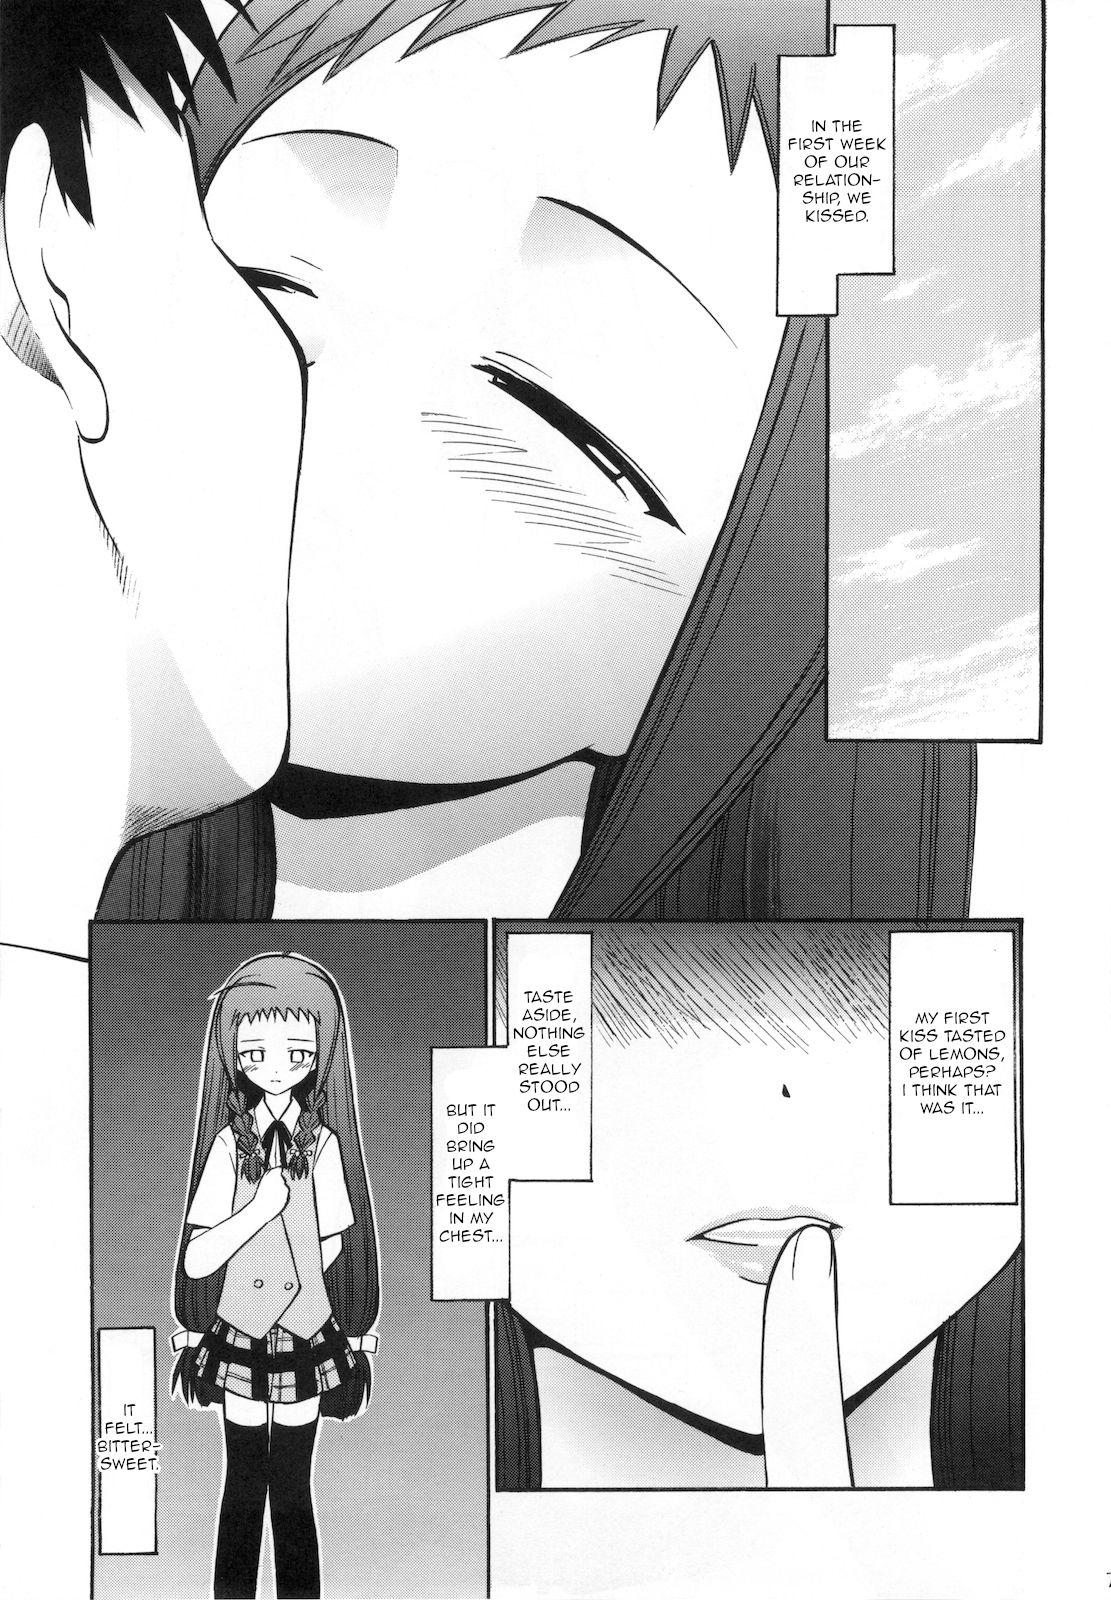 Spying Yue no Koisuru Heart - Mahou sensei negima Cachonda - Page 6